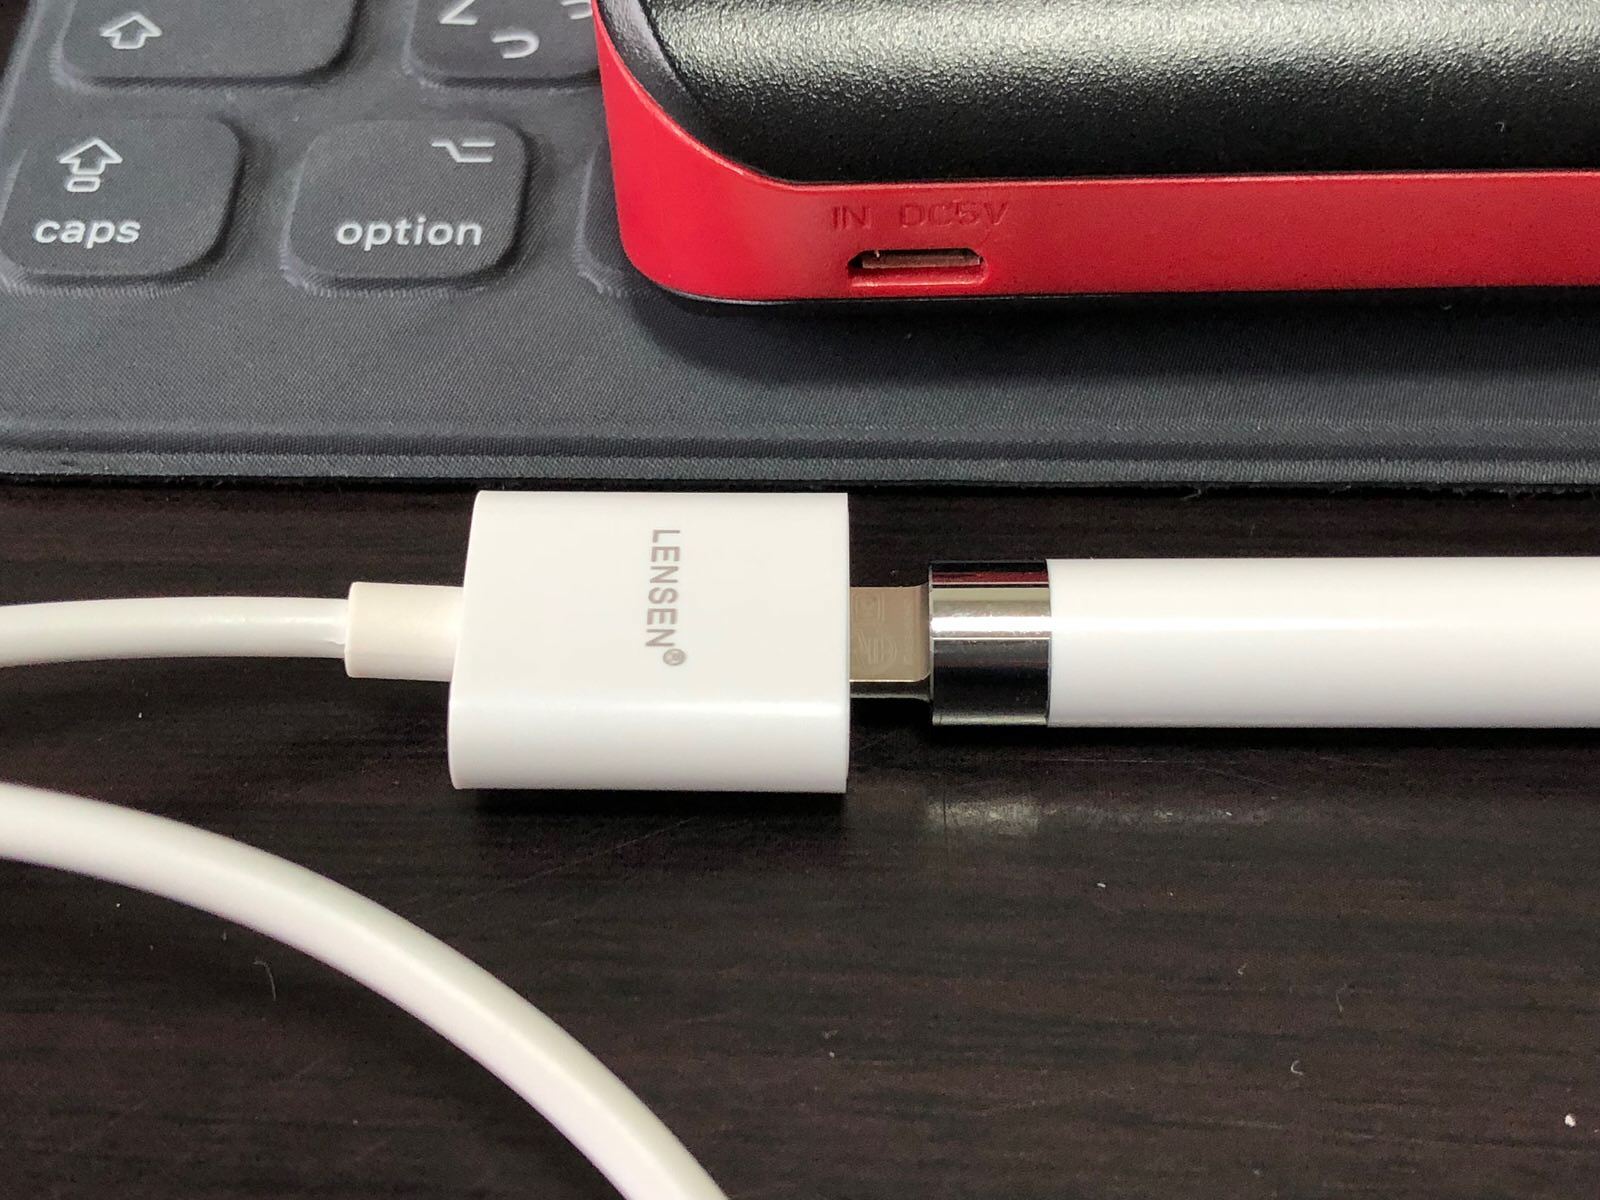 ［Amazon］注文していた「Apple Pencil 充電 ケーブル オス to メス 0.5m アップル ペンシル キャップ カバー」が届いたので早速開封してみたよ